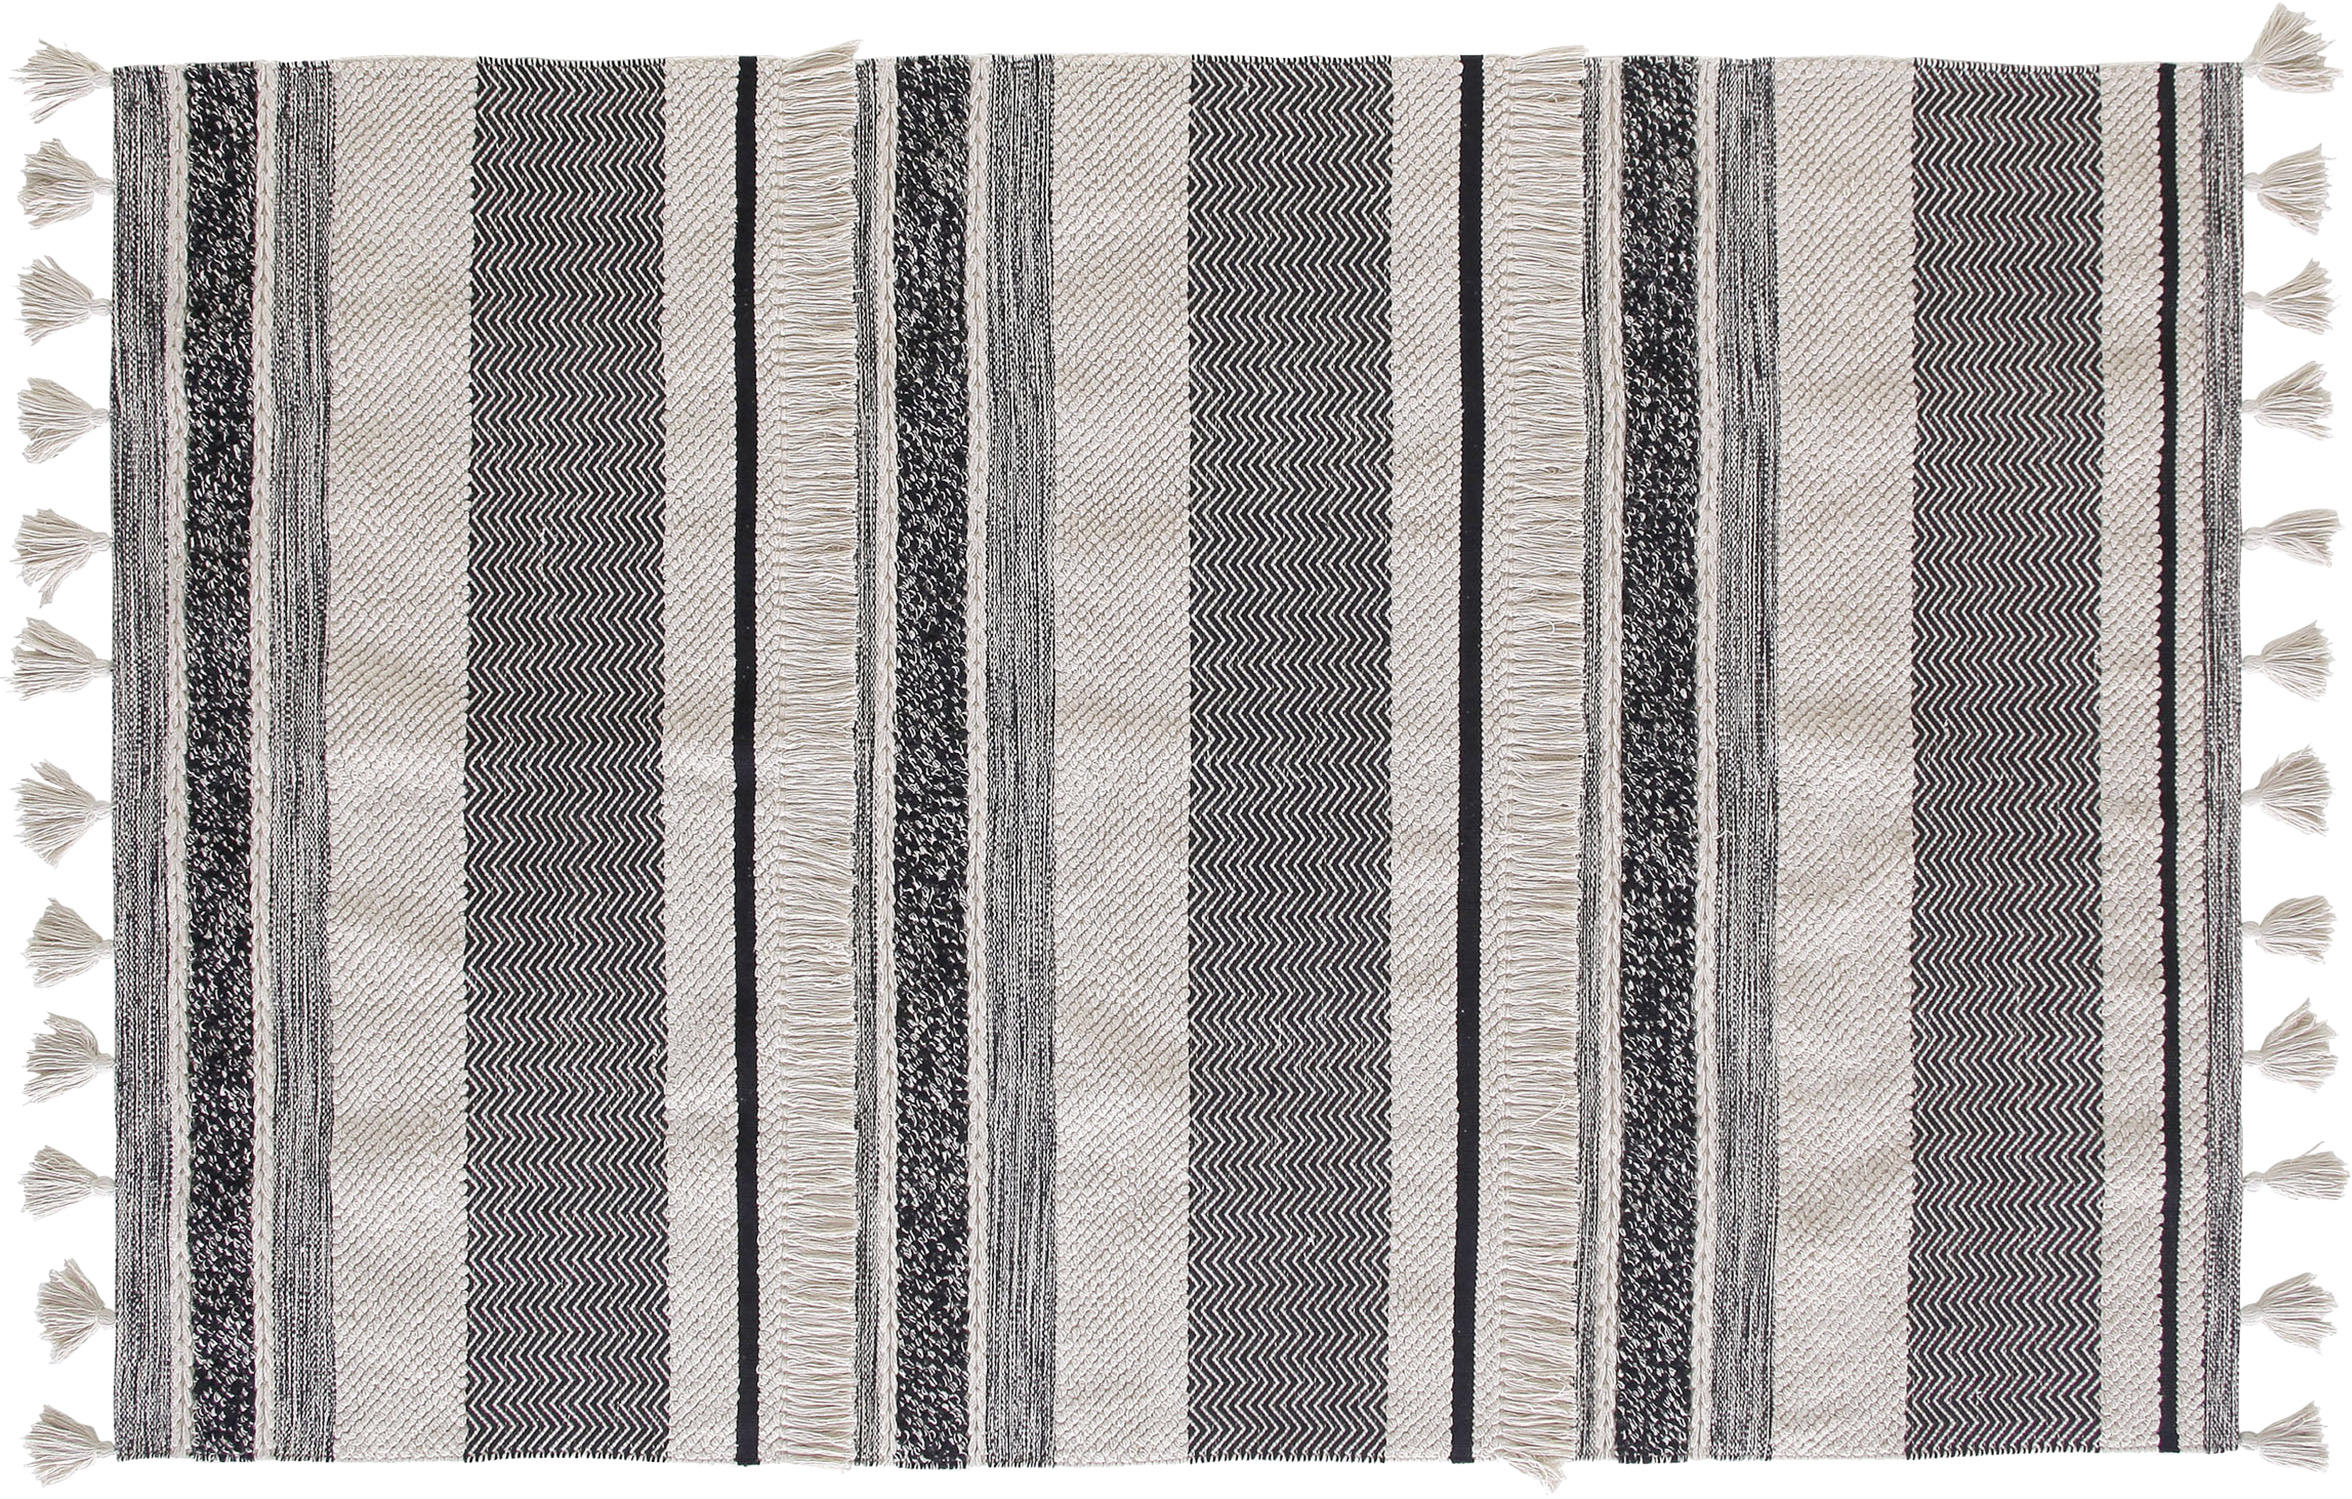 TEPPICH  230/160 cm  Grau, Schwarz, Hellgrau, Beige   - Beige/Hellgrau, Trend, Textil (230/160cm)